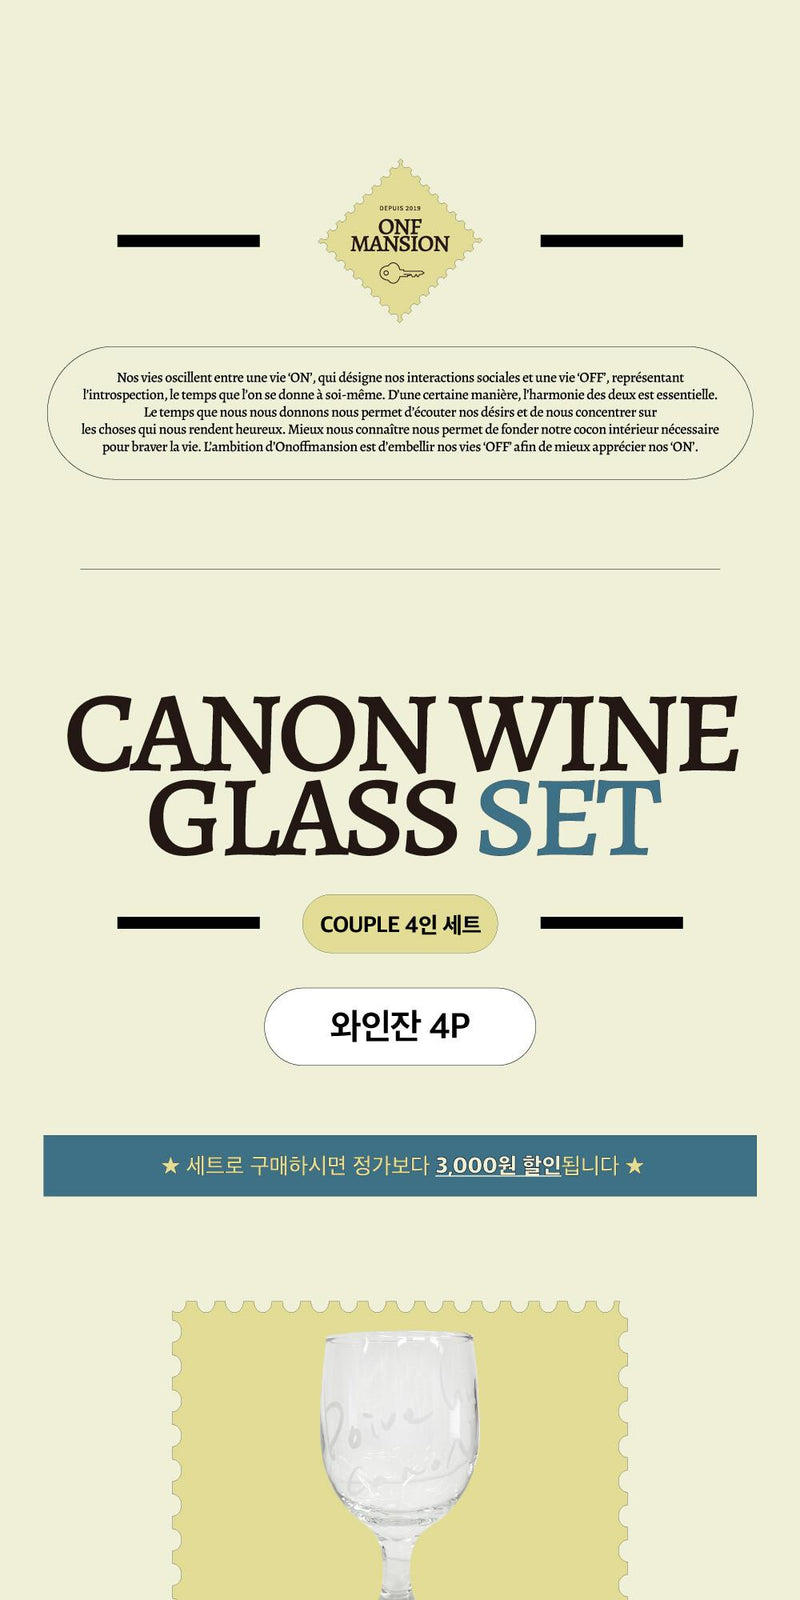 [ROOM 618] Canon Wine Glass 4人用セット (4P)